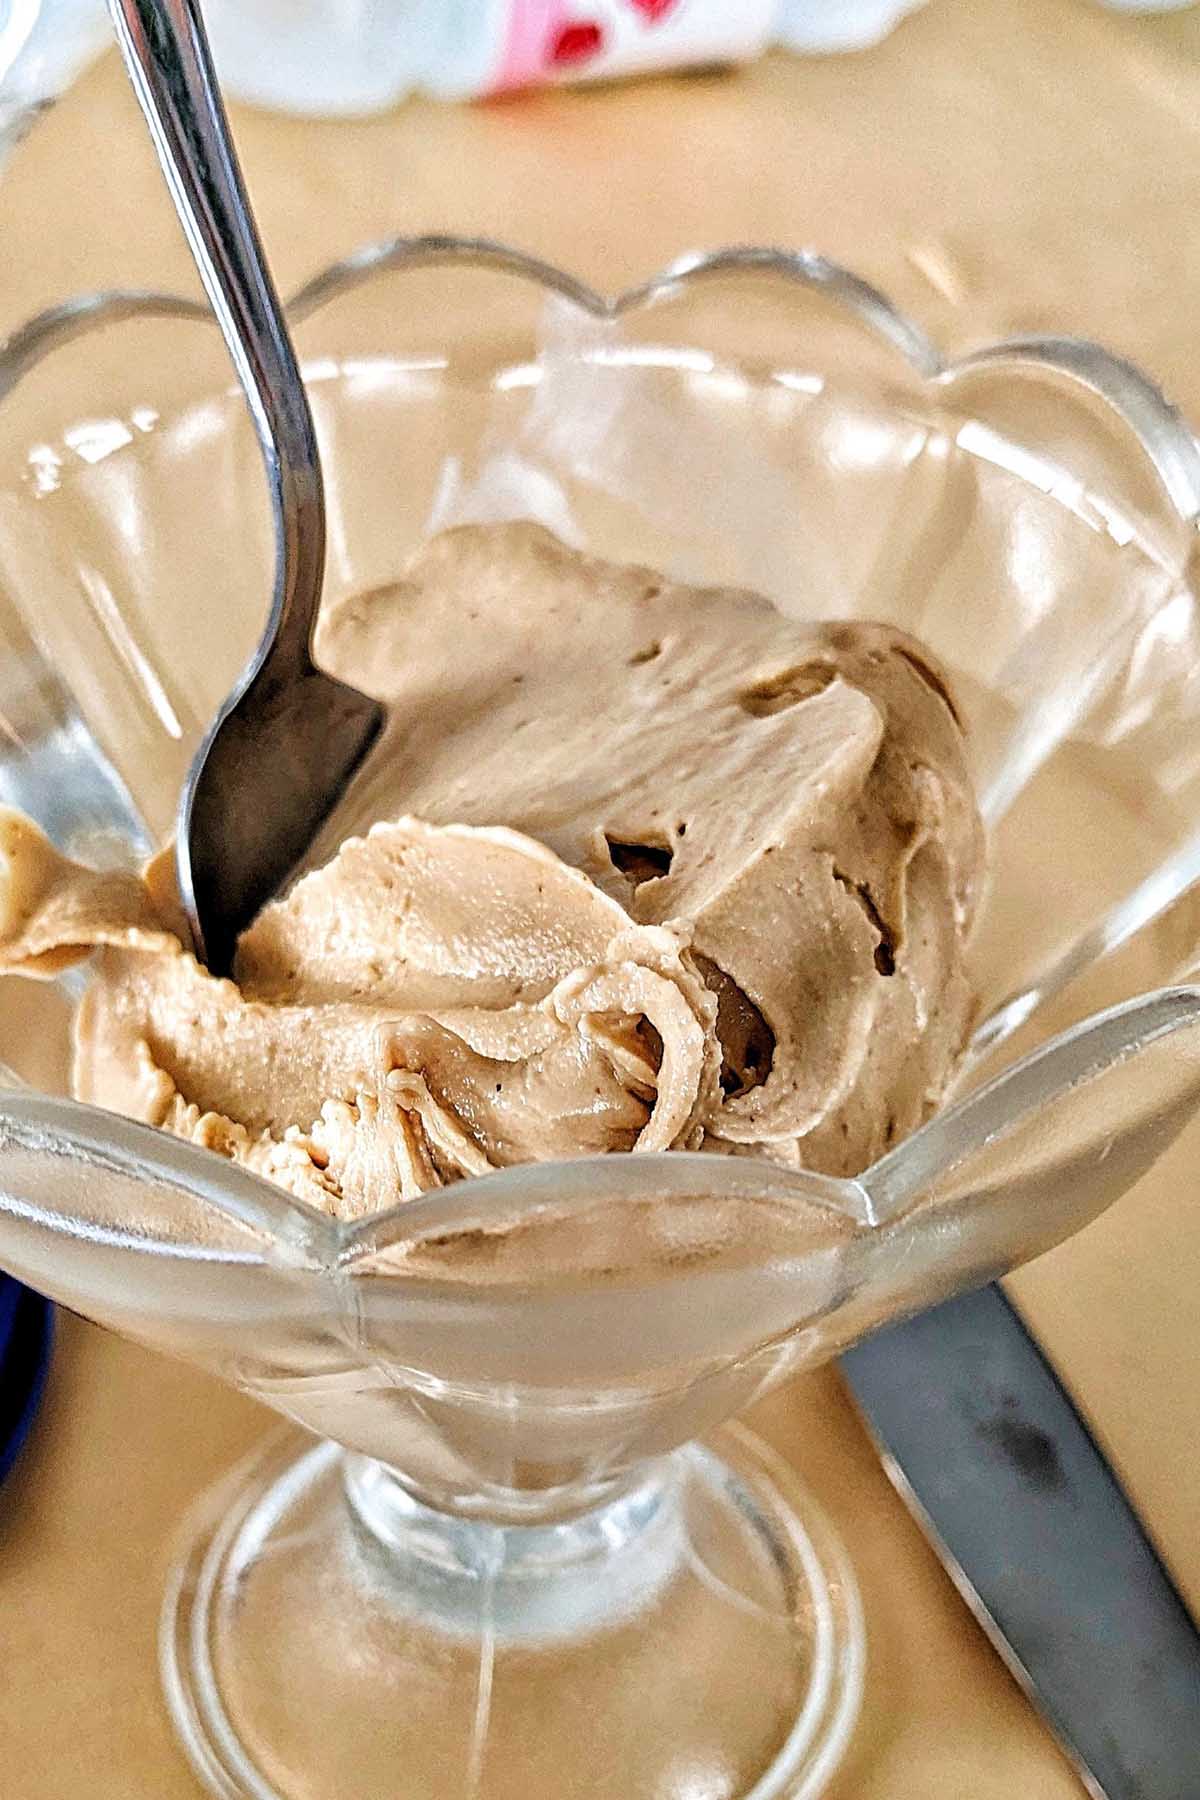 hazelnut gelato in a glass bowl.